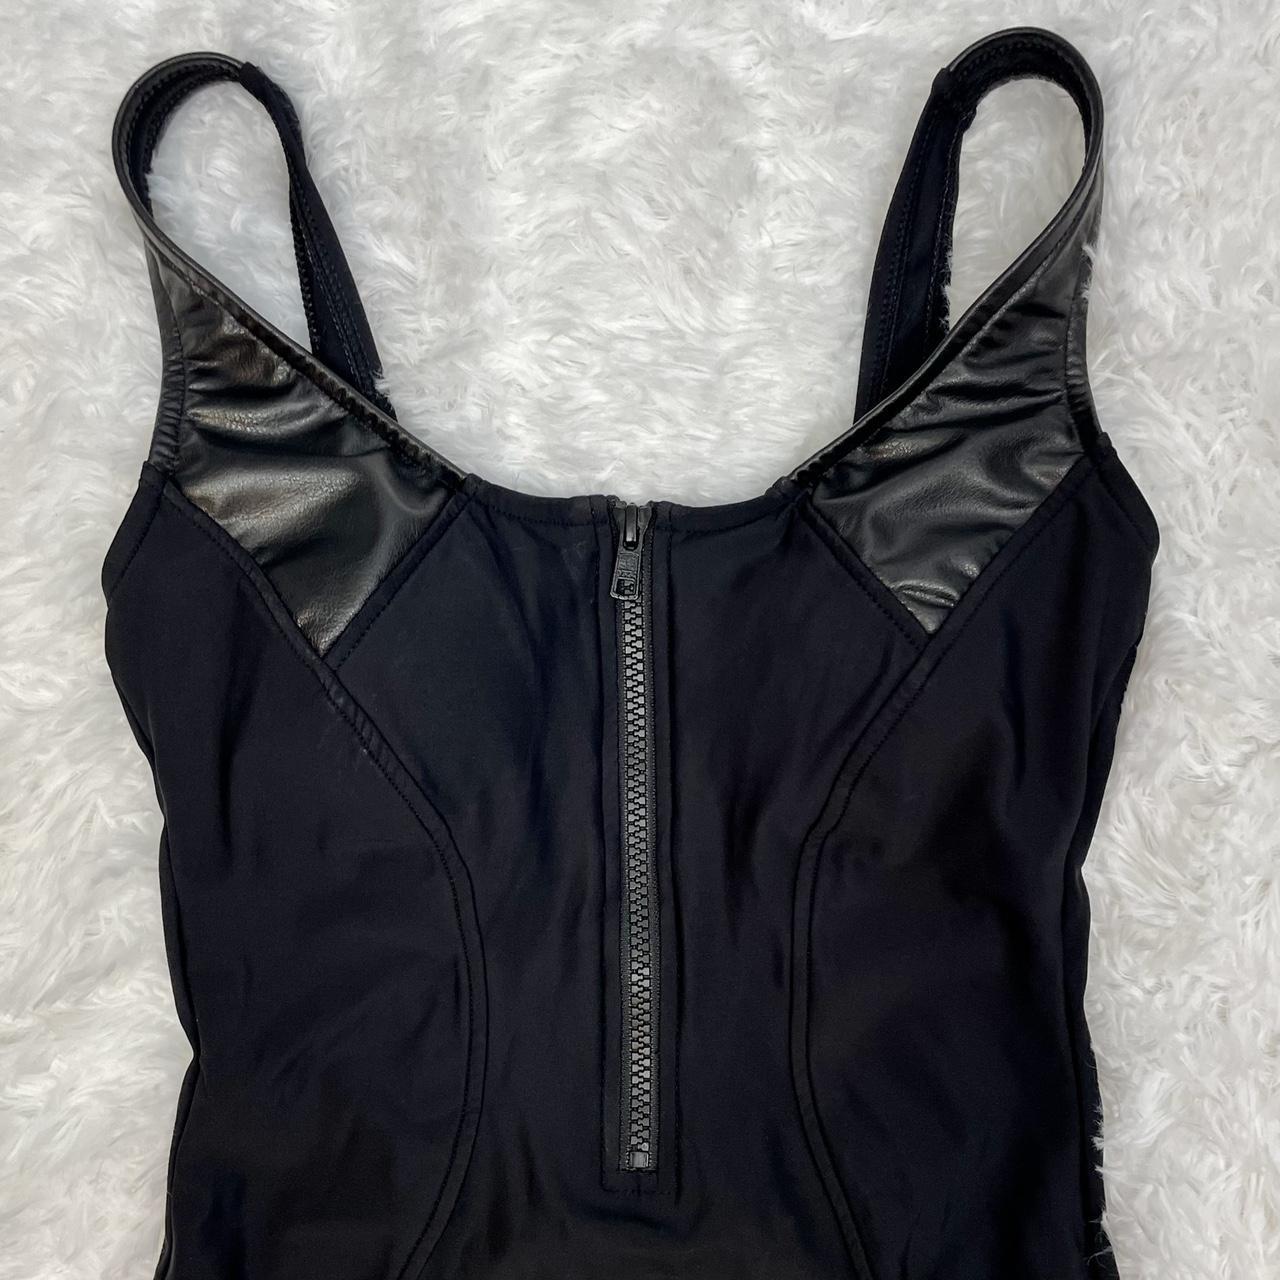 💎 Y2K Black Body Suit Bikim 💎 100% Authentic 💎... - Depop